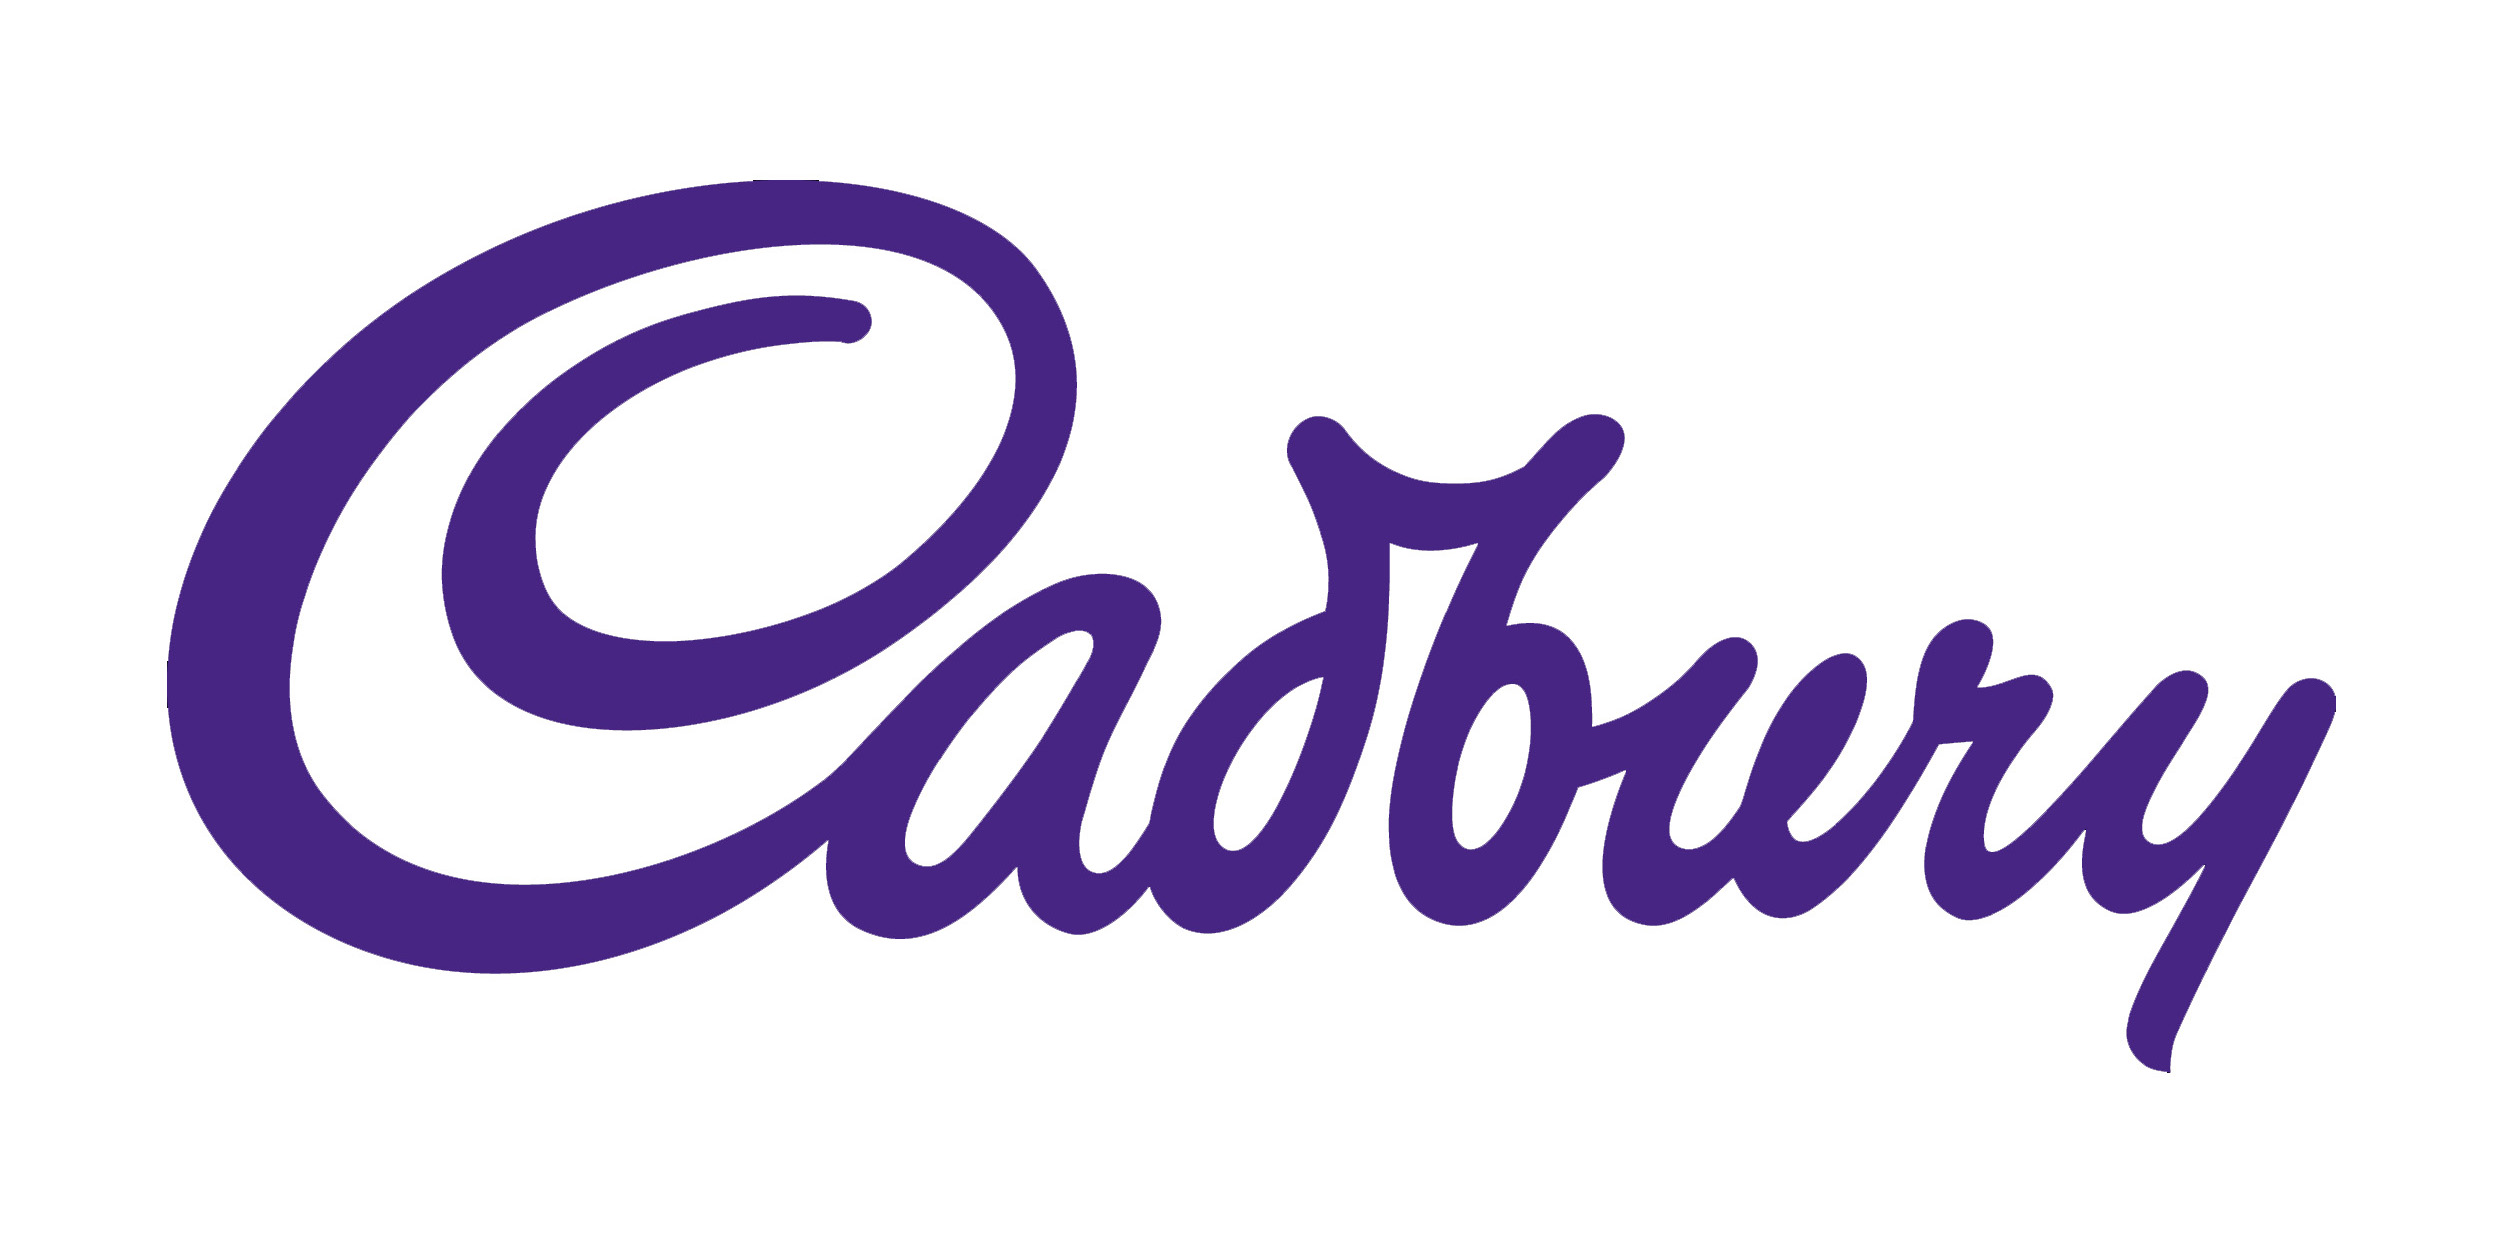 Cadbury's Cookies